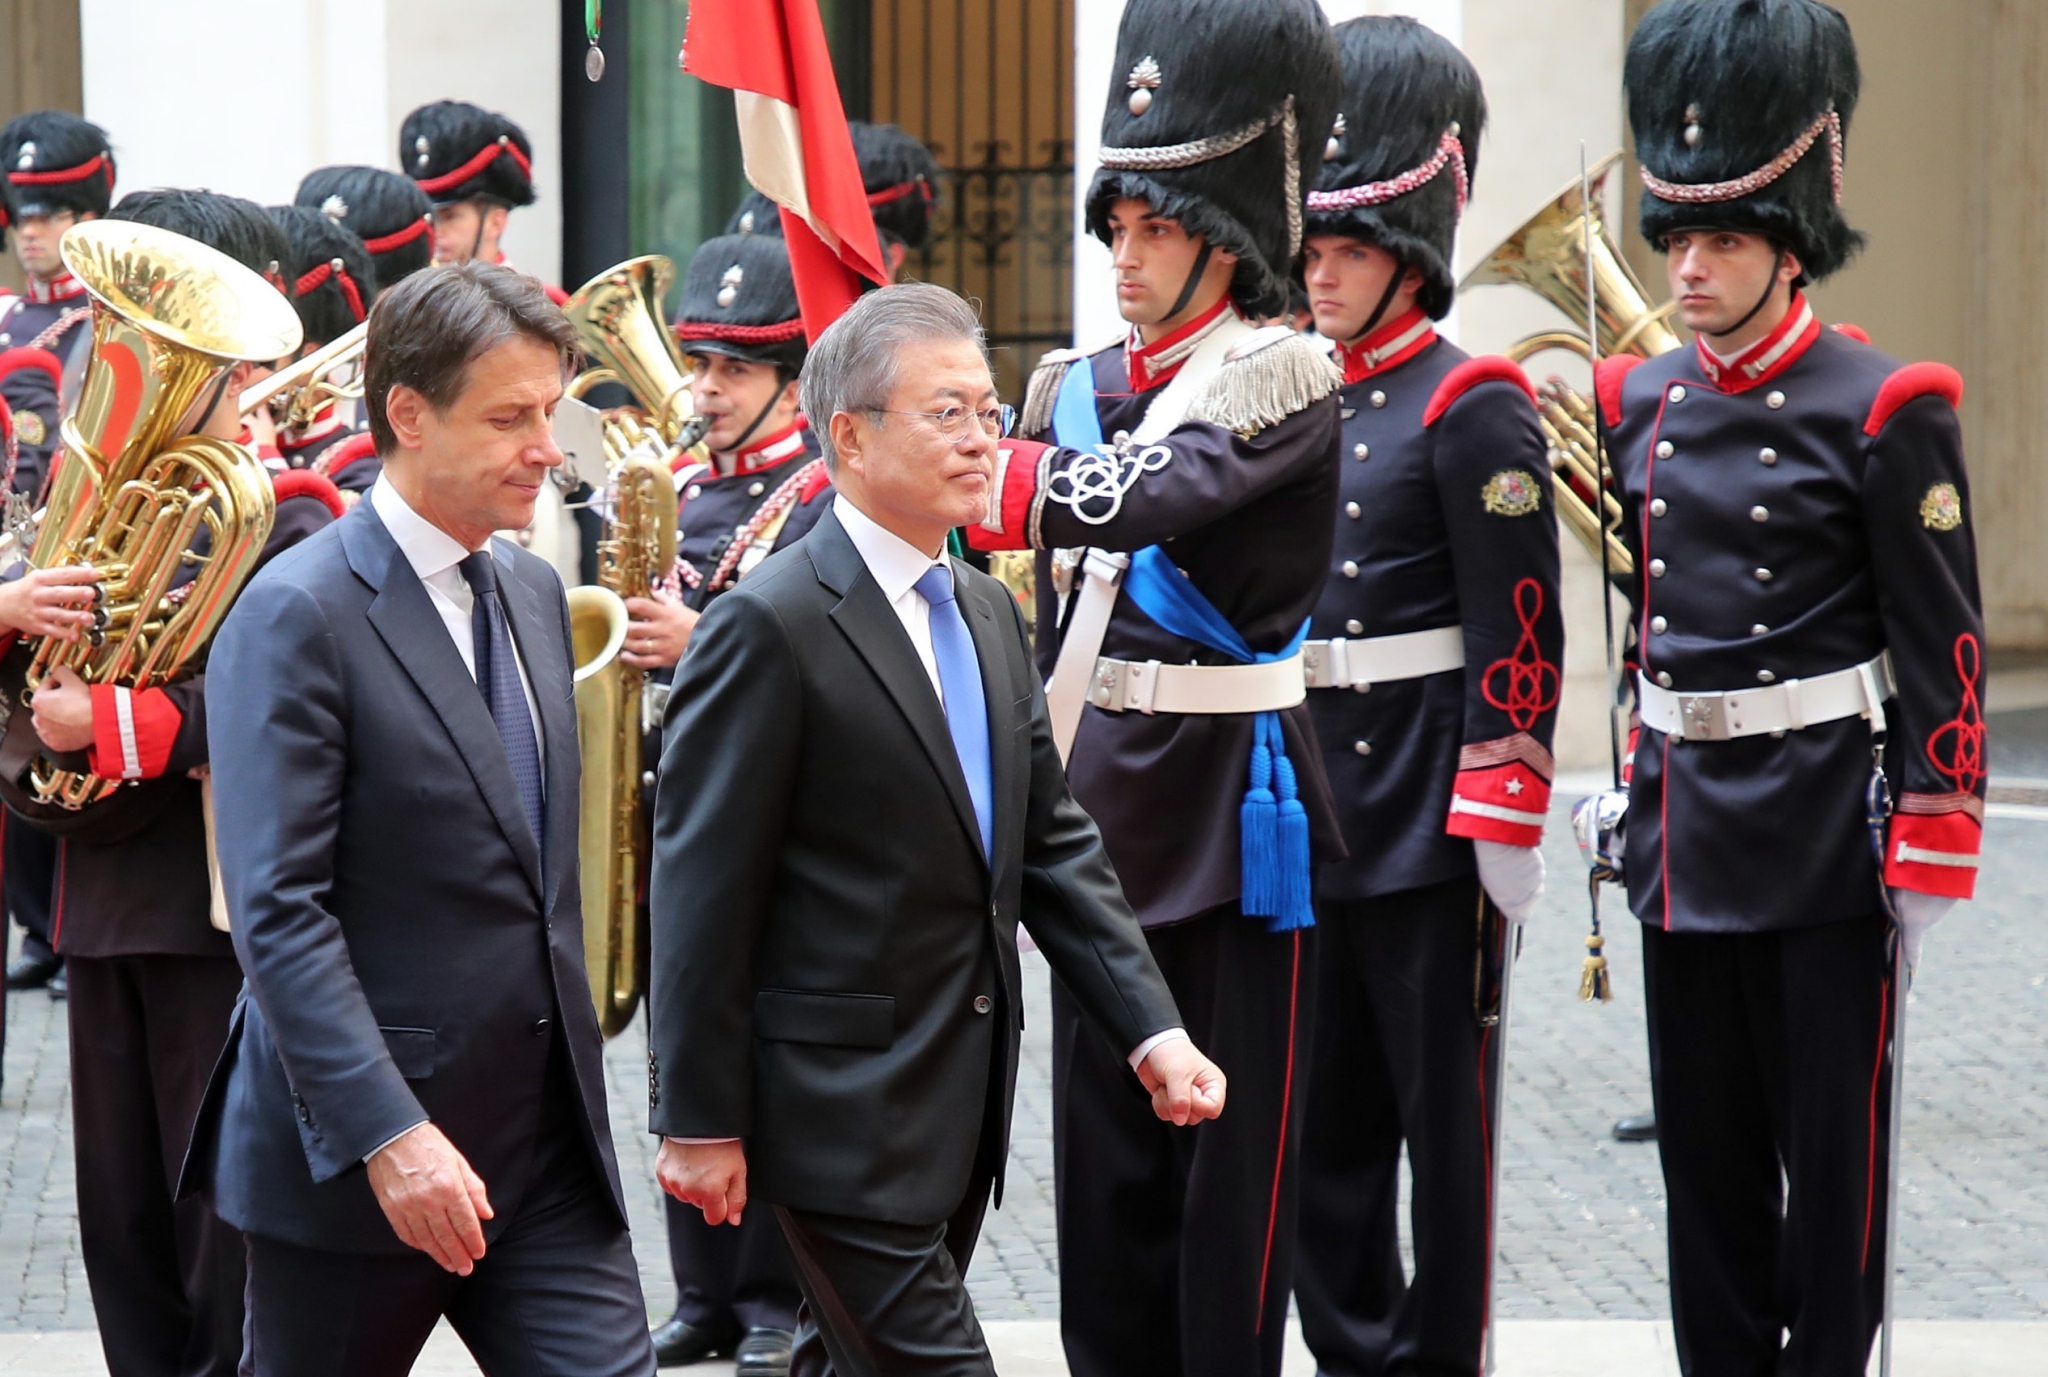 Thủ tướng Italy Giuseppe Conte (trái) và Tổng thống Hàn Quốc Moon Jae-in (giữa) duyệt đội danh dự trong lễ đón ở Rome ngày 17/10/2018. (Ảnh: Yonhap/TTXVN)